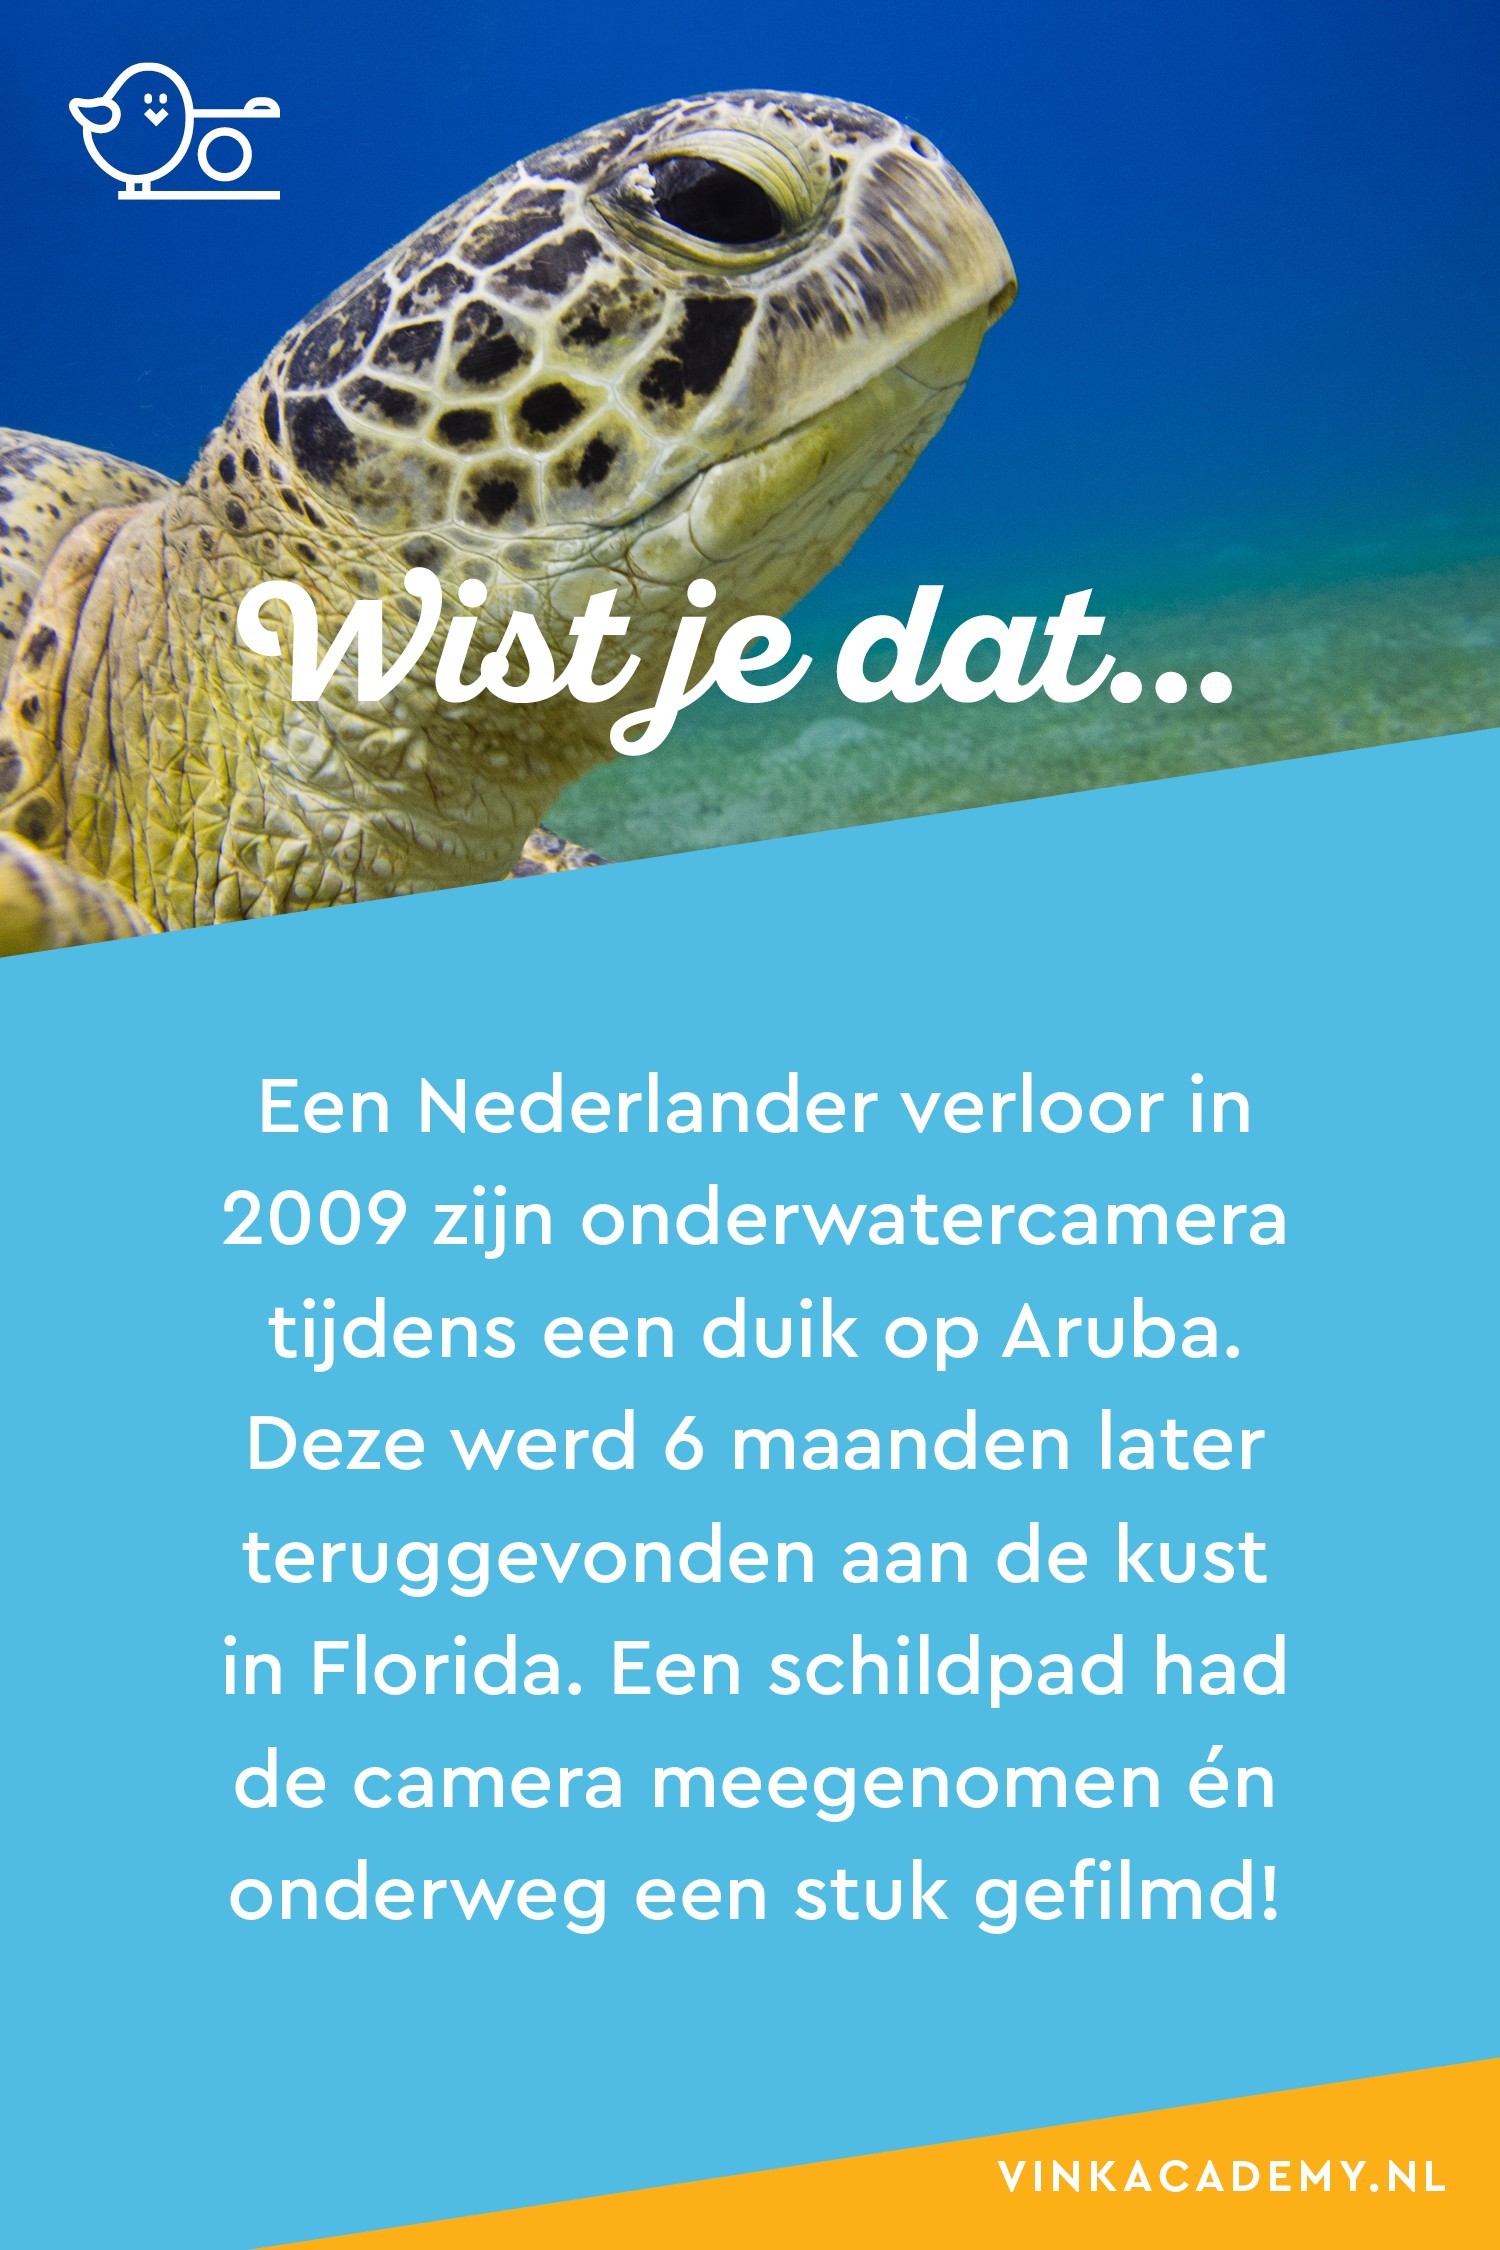 Een Nederlander verloor zijn onderwatercamera bij Aruba, maar die werd 6 maanden later teruggevonden voor de kust van Florida. Een schildpad had de camera meegenomen en onderweg een stukje gefilmd.